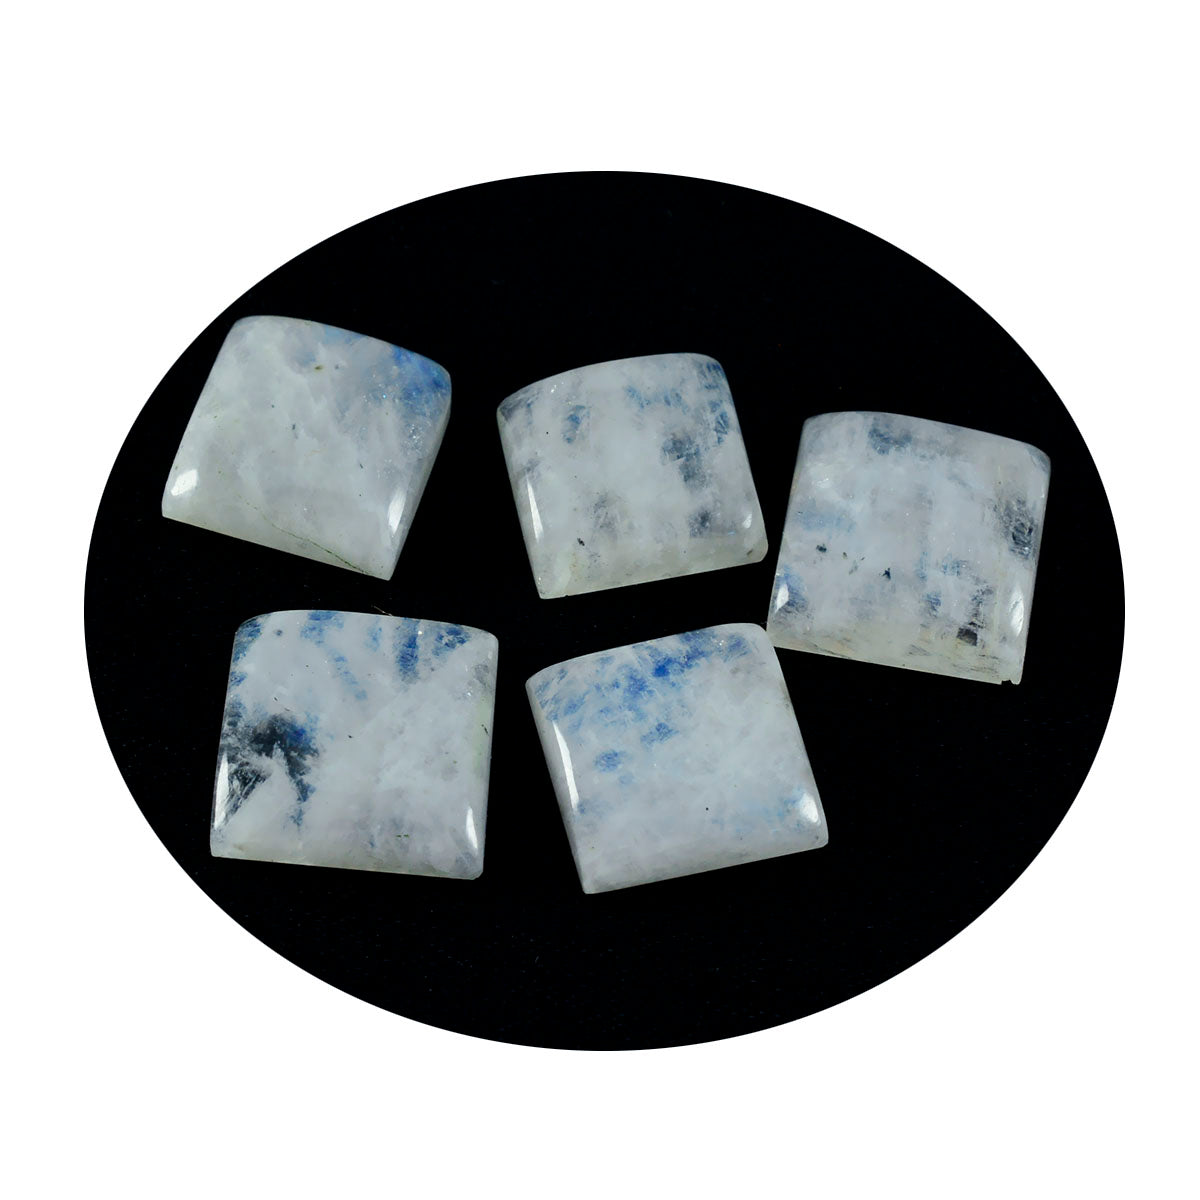 Riyogems 1 Stück weißer Regenbogen-Mondstein-Cabochon, 14 x 14 mm, quadratische Form, süße, lose Edelsteine